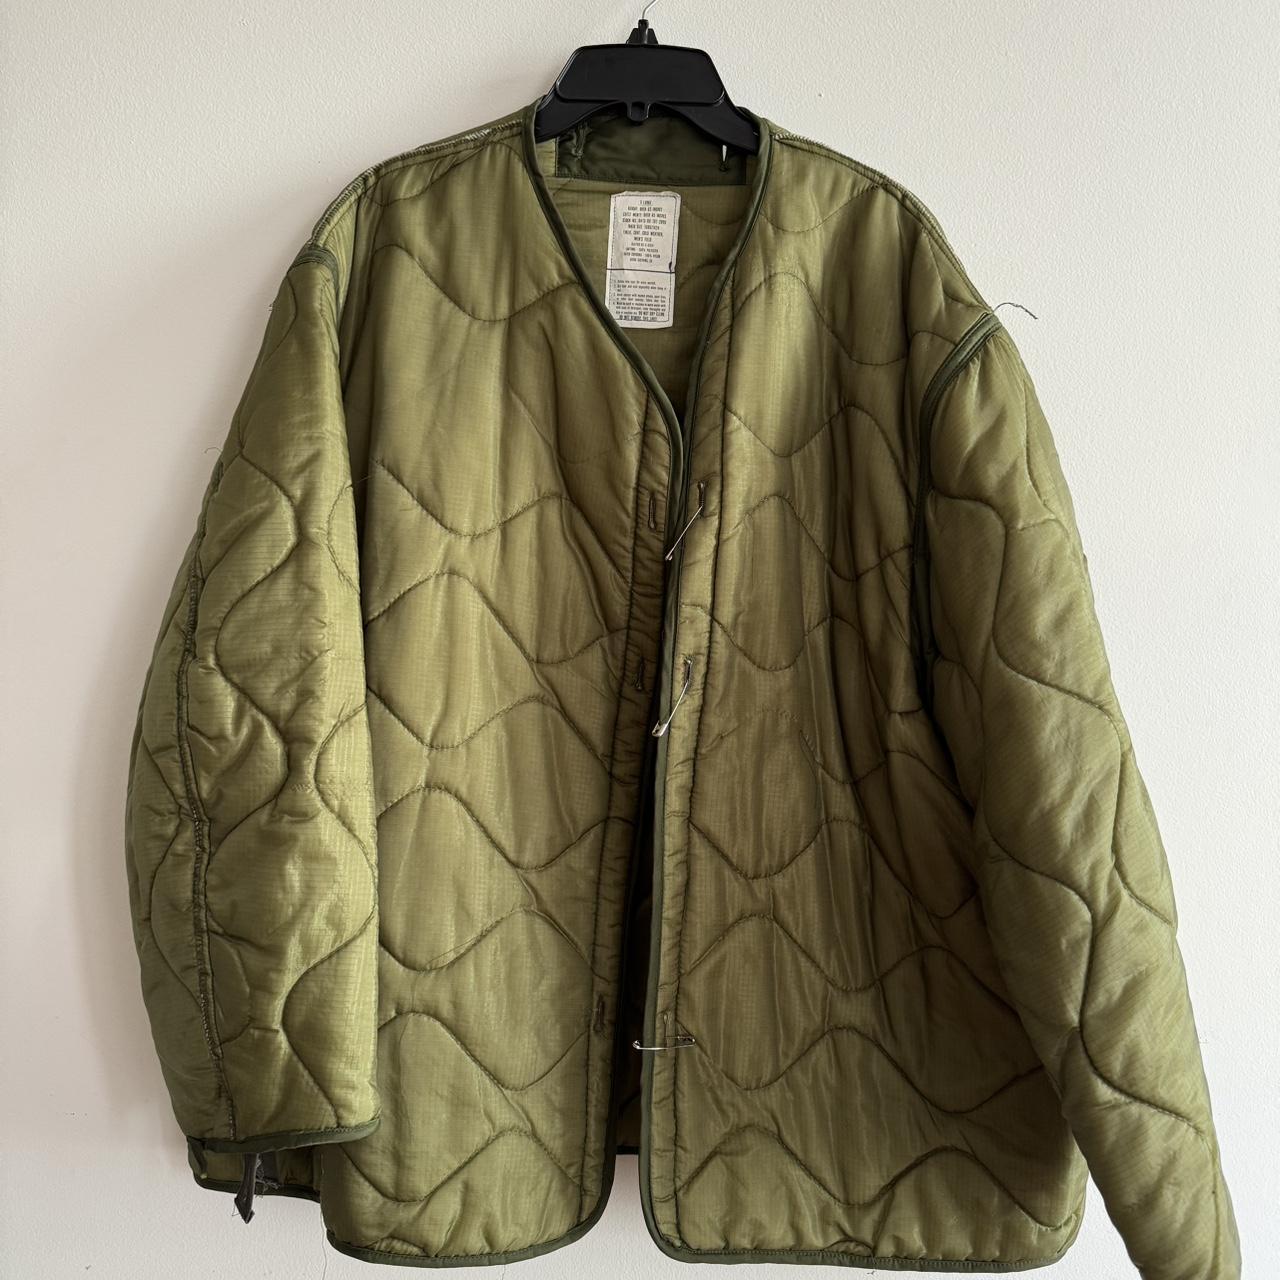 Vintage Green Military Jacket Liner XL details on... - Depop